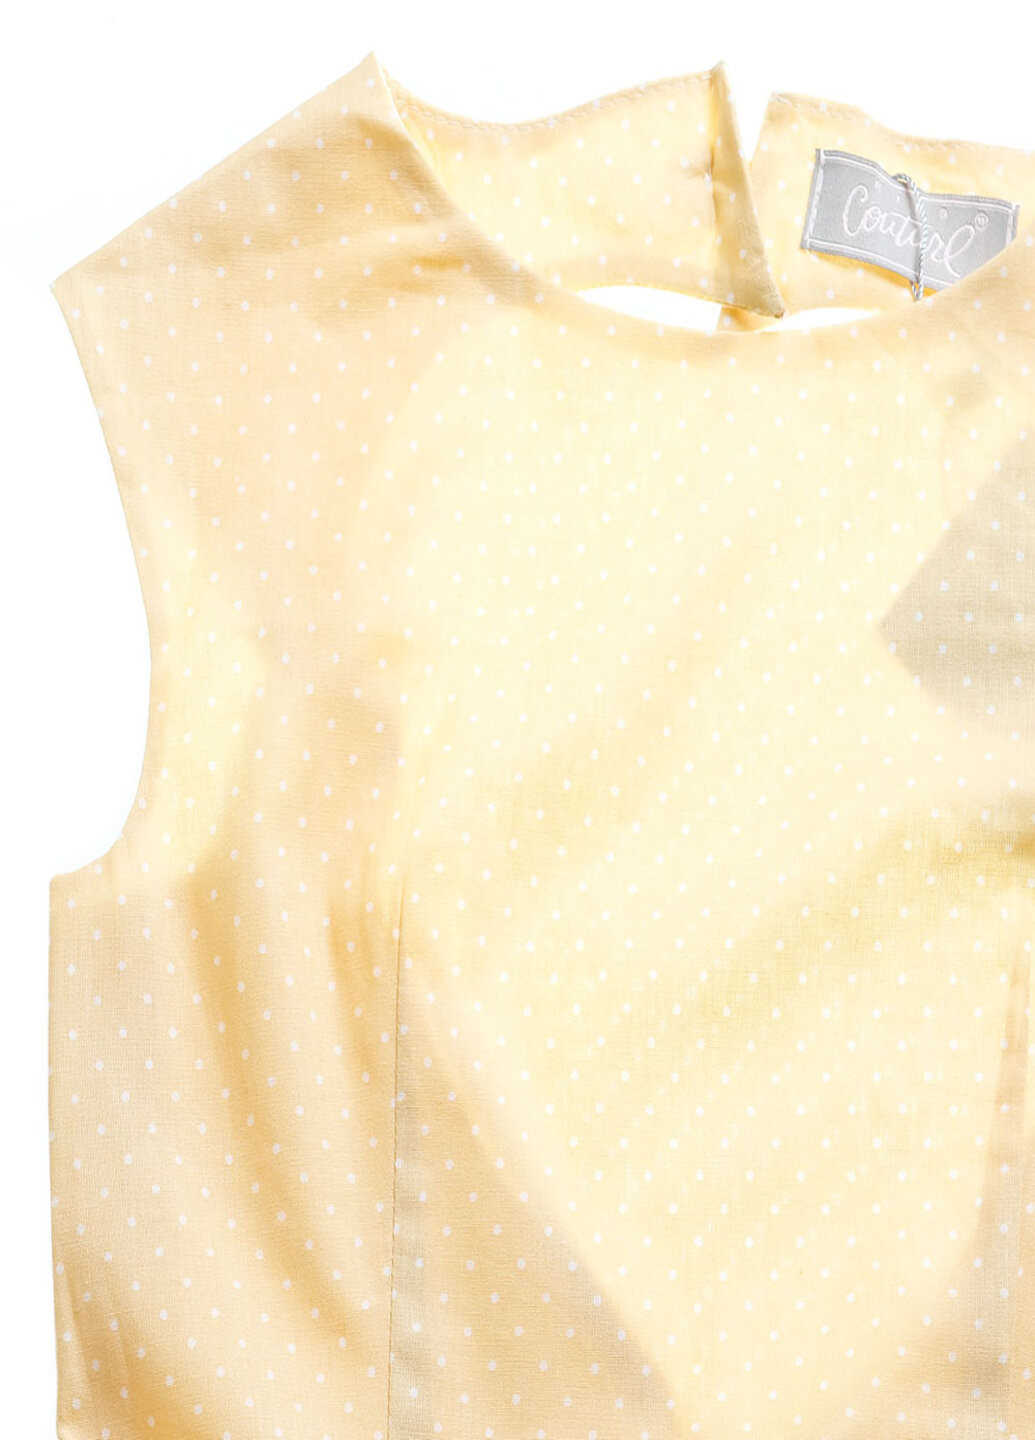 Жёлтое платье Kids Couture (18645339)